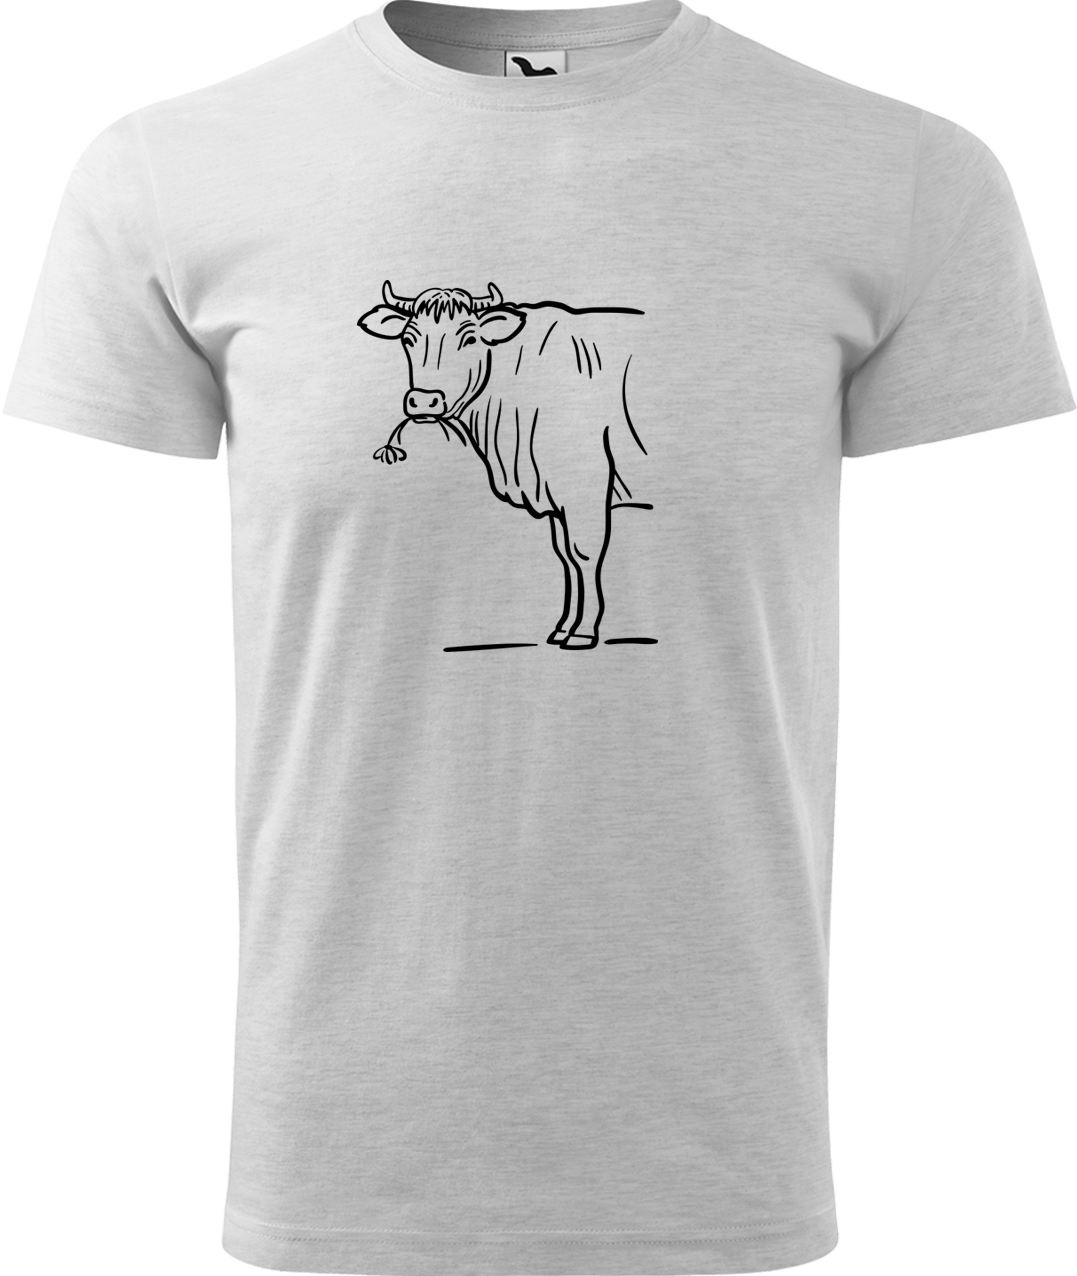 Pánské tričko s krávou - Býk Velikost: S, Barva: Světle šedý melír (03), Střih: pánský